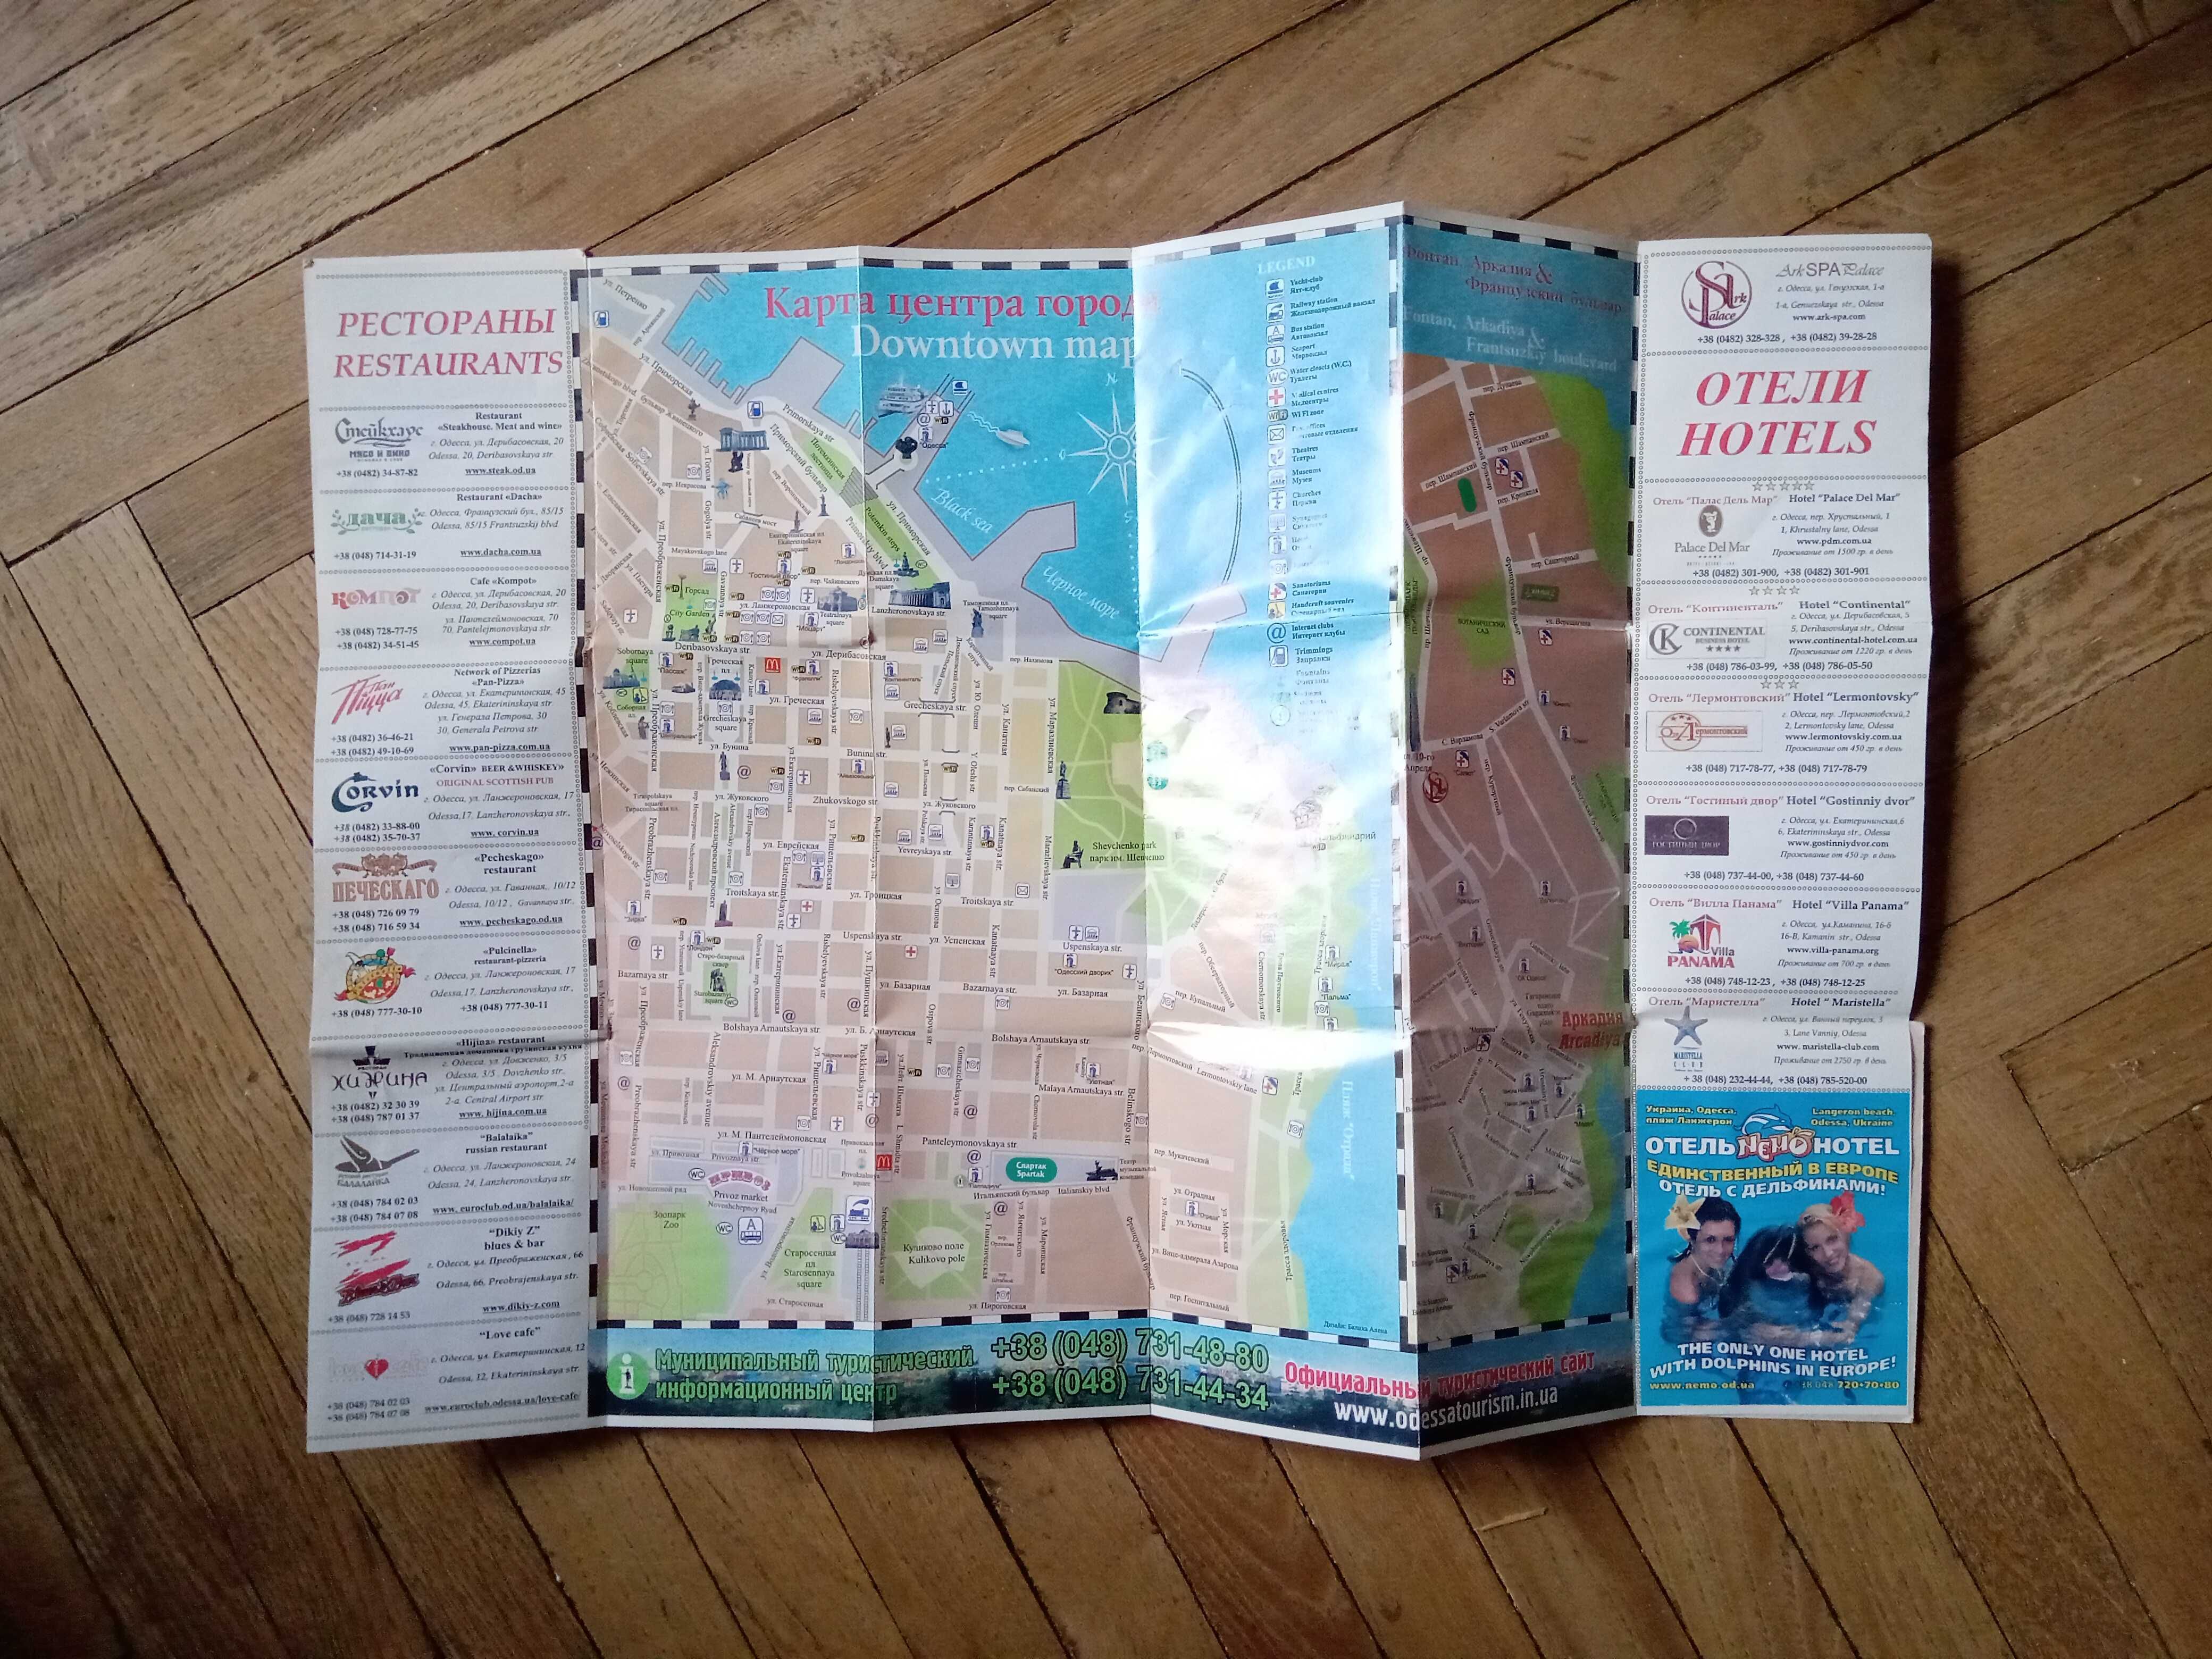 Туристическая карта-схема Одессы